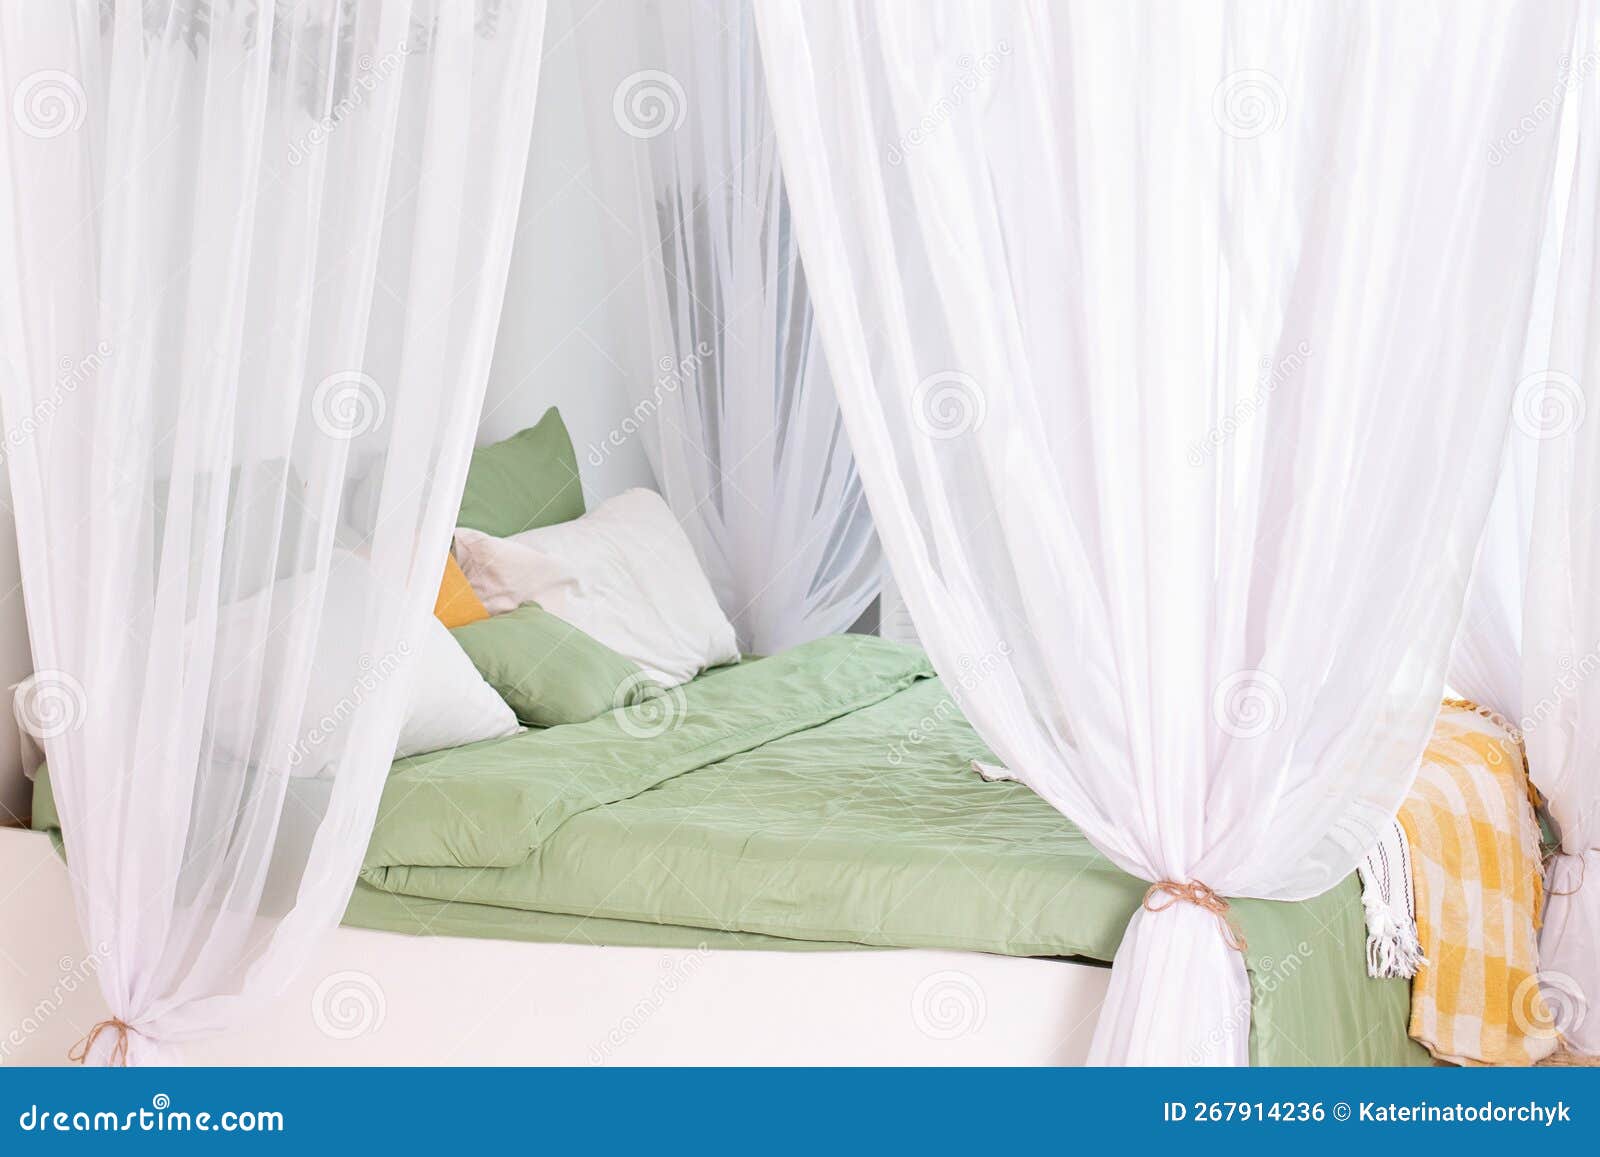 https://thumbs.dreamstime.com/z/dormitorio-blanco-moderno-de-estilo-andinaviaco-con-cama-cortinas-blancas-que-fluyen-habitaci%C3%B3n-dise%C3%B1o-boho-interior-c%C3%B3moda-y-267914236.jpg